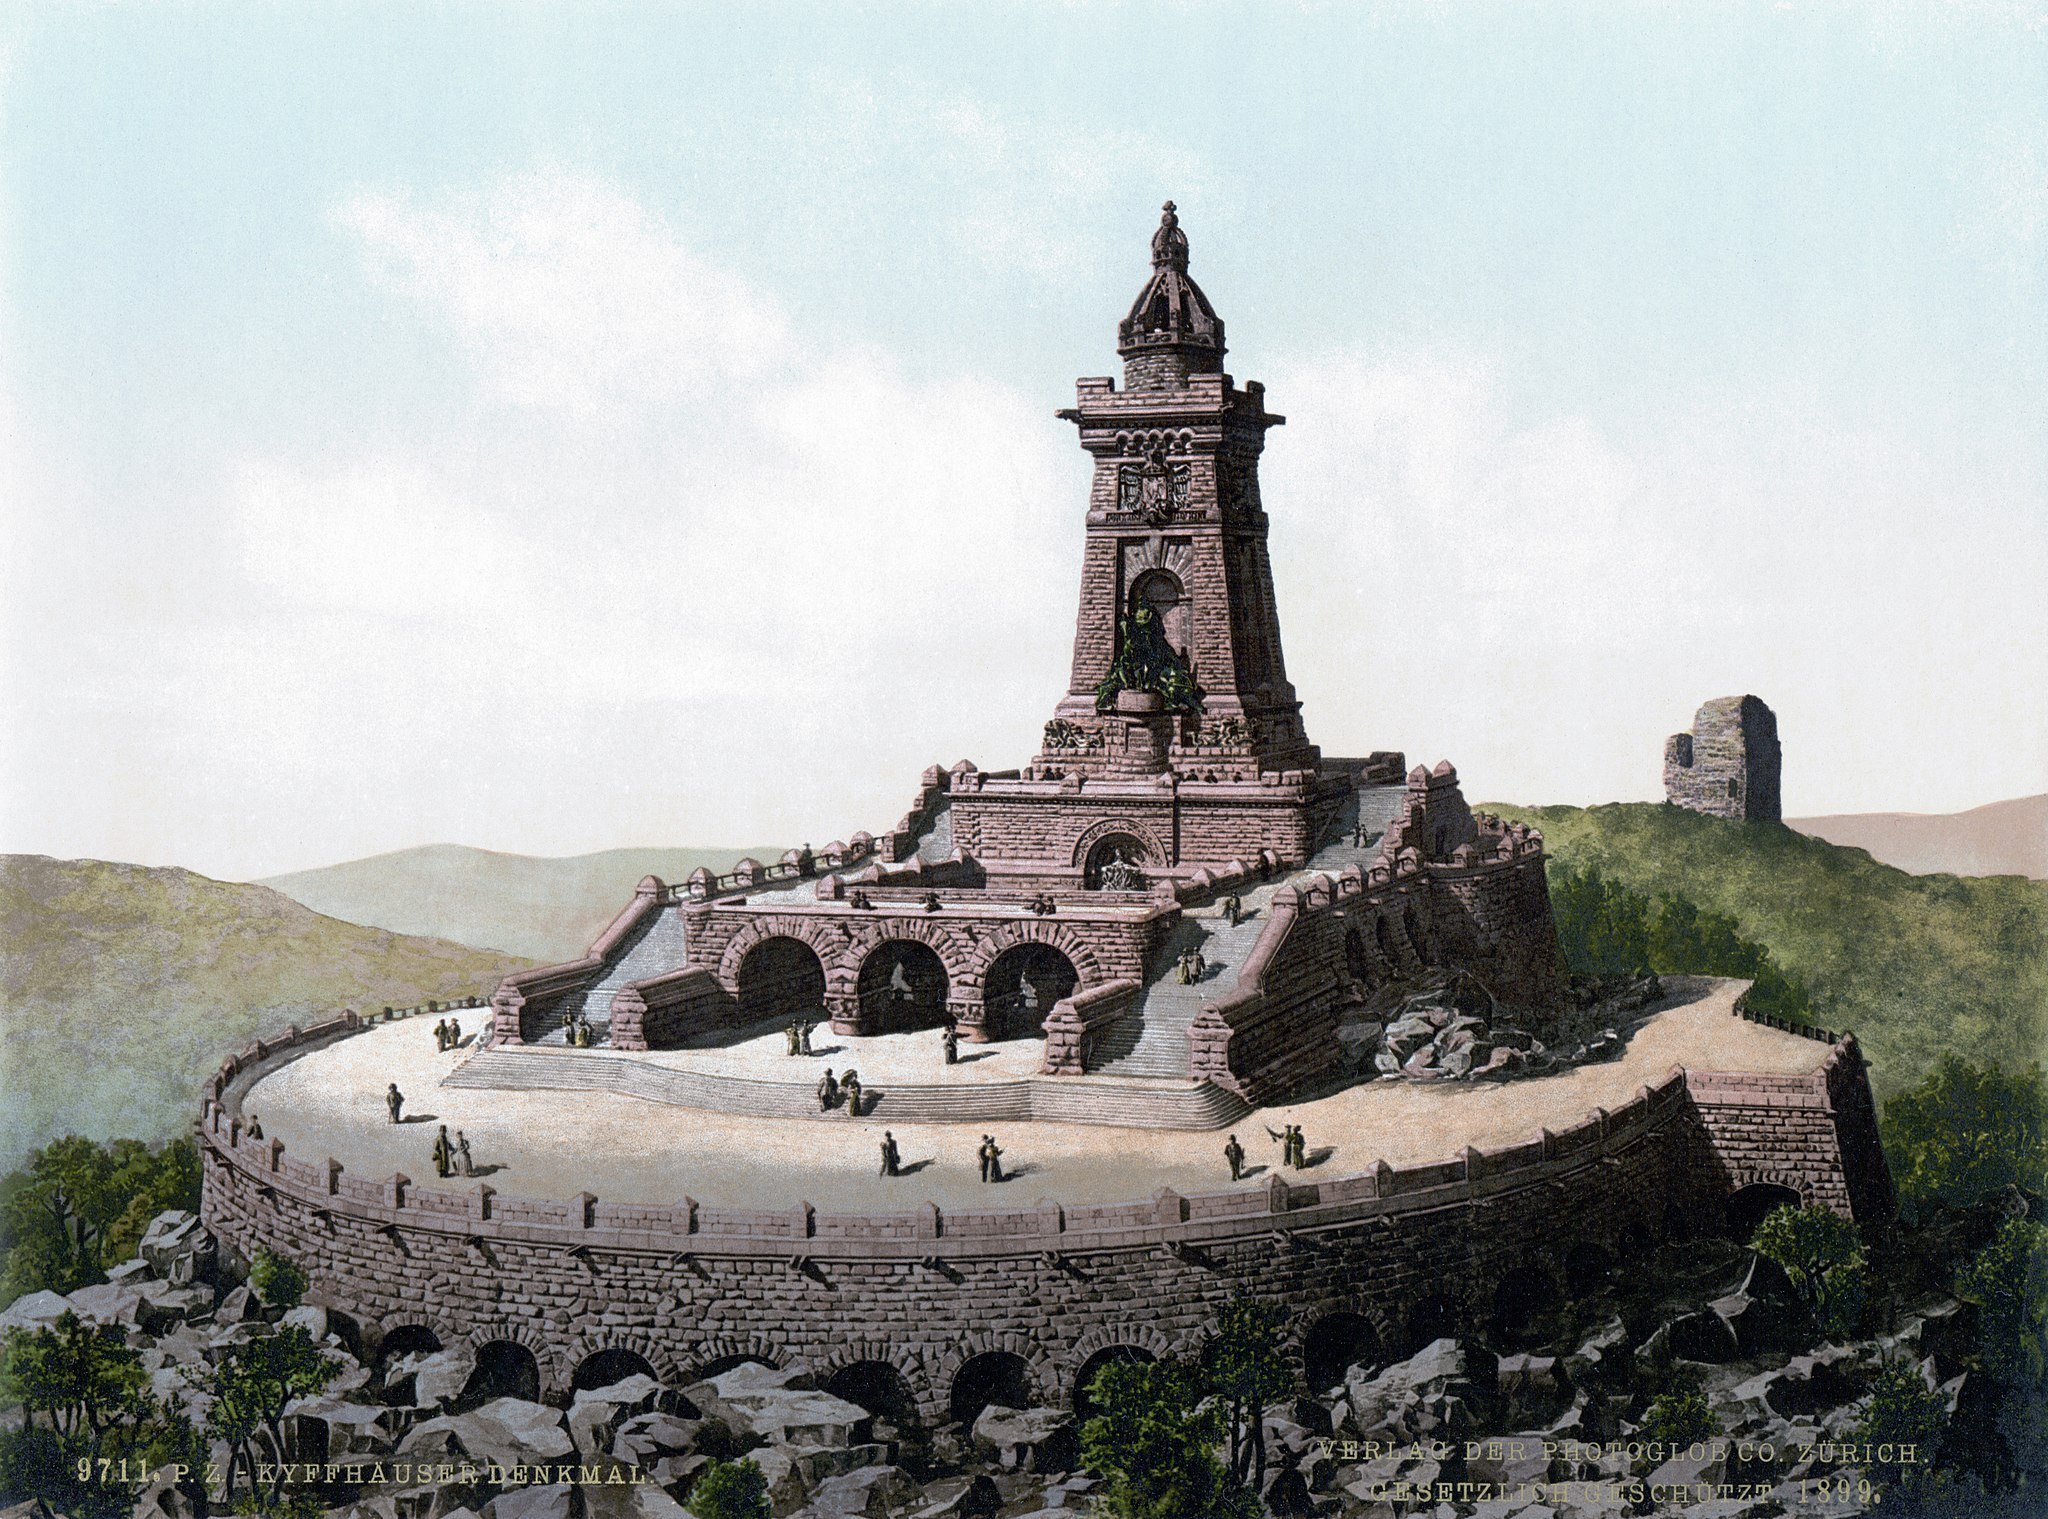 Luftbild des Kyffhäuserdenkmals, um 1900